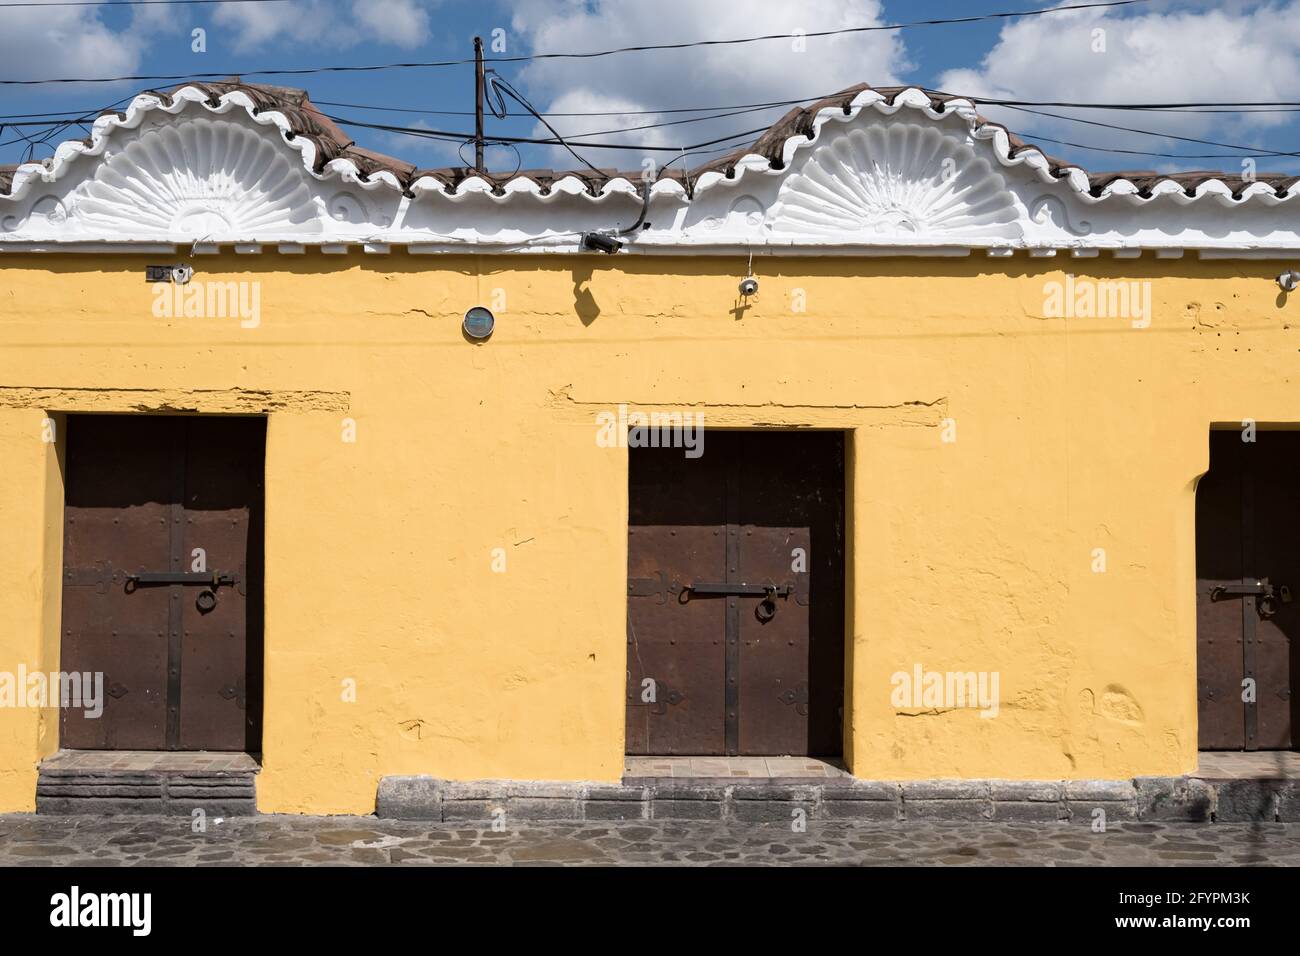 Detail der Fassade eines Gebäudes in Antigua Guatemala mit verzierten Dachstilen, lackierten gelben Wänden und eisernen Türen. Stockfoto